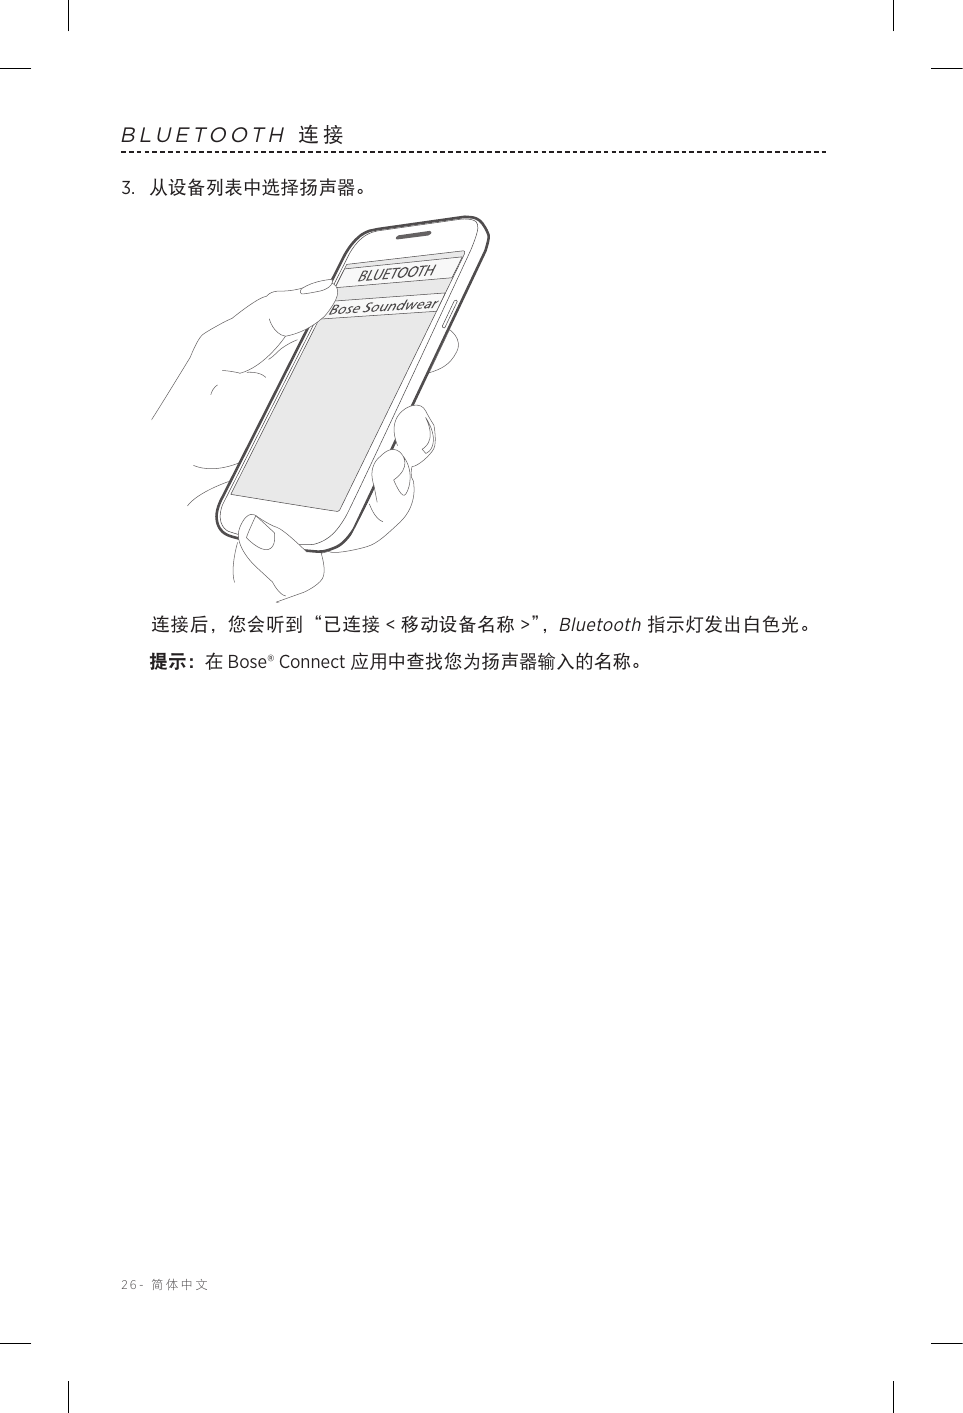 26-  简体中文BLUETOOTH 连接3.  从设备列表中选择扬声器。连接后，您会听到“已连接 &lt; 移动设备名称 &gt;”，Bluetooth 指示灯发出白色光。提示： 在 Bose® Connect 应用中查找您为扬声器输入的名称。